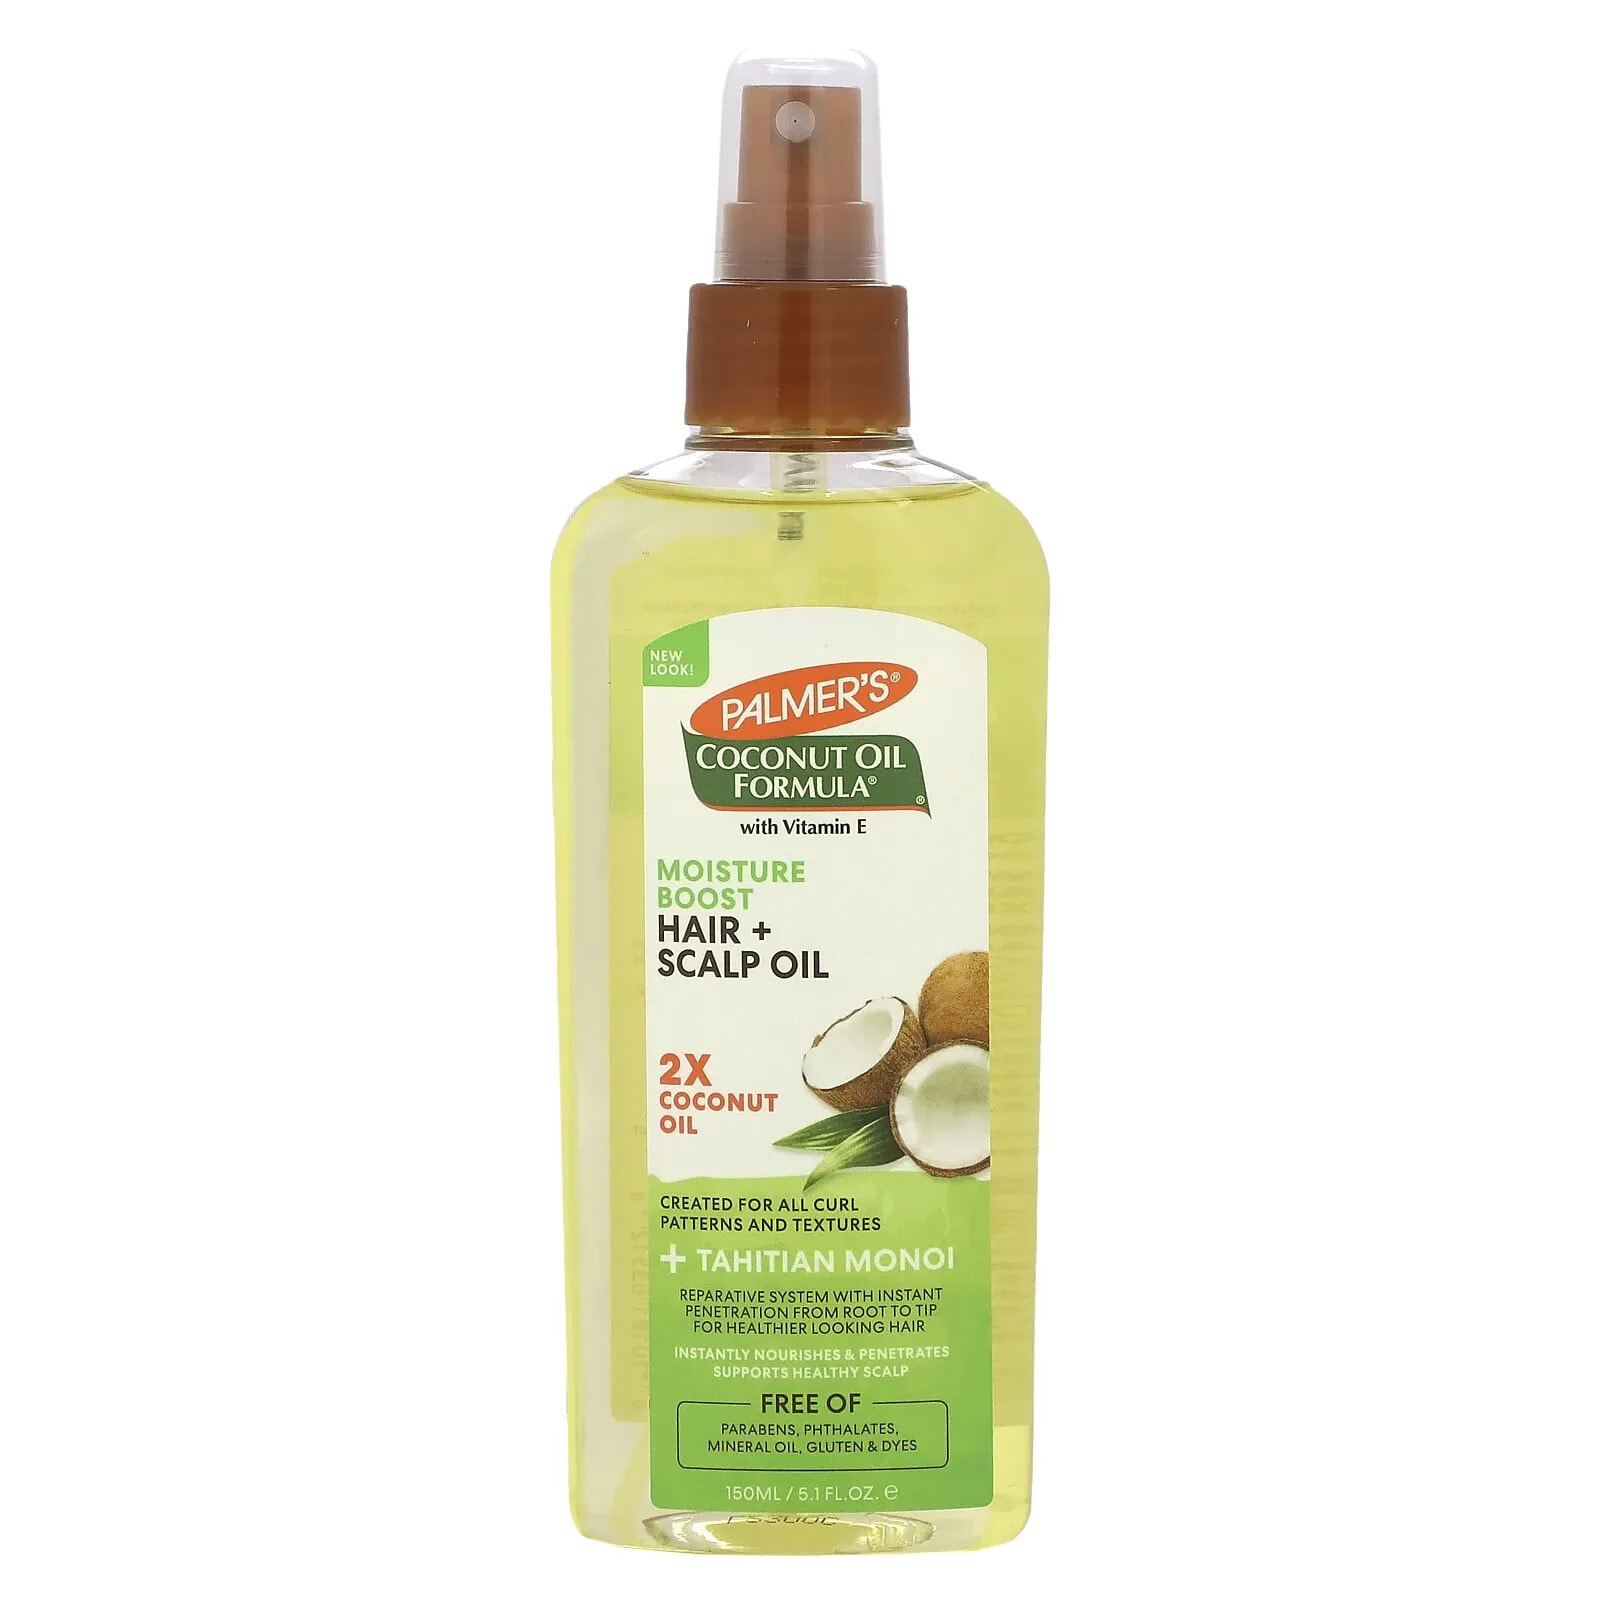 Palmers Coconut Oil Formula Moisture Boost Hair + Scalp Oil Увлажняющее масло для волос и кожи головы с кокосовым маслом и витамином Е 150 мл